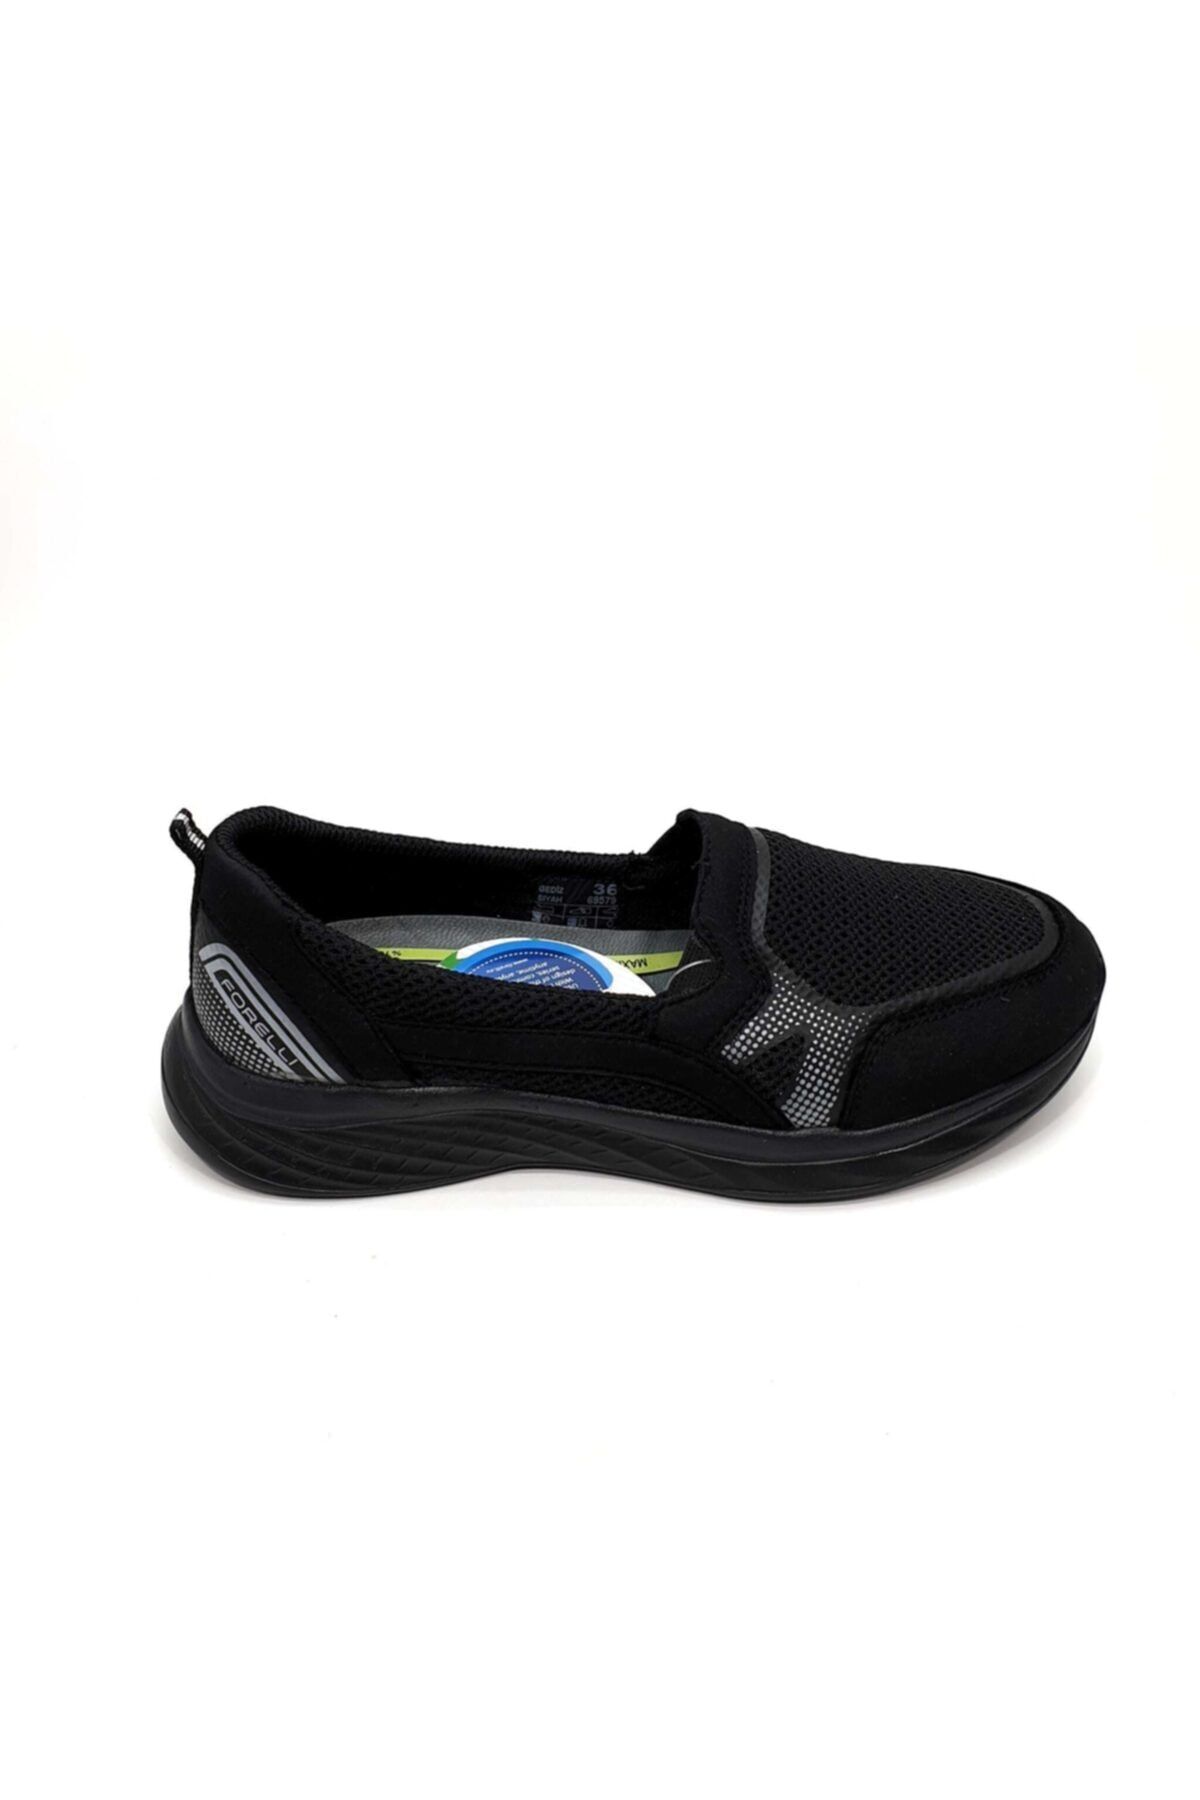 Forelli Gediz-g Anatomik Siyah Tekstil Yürüyüş Ayakkabısı